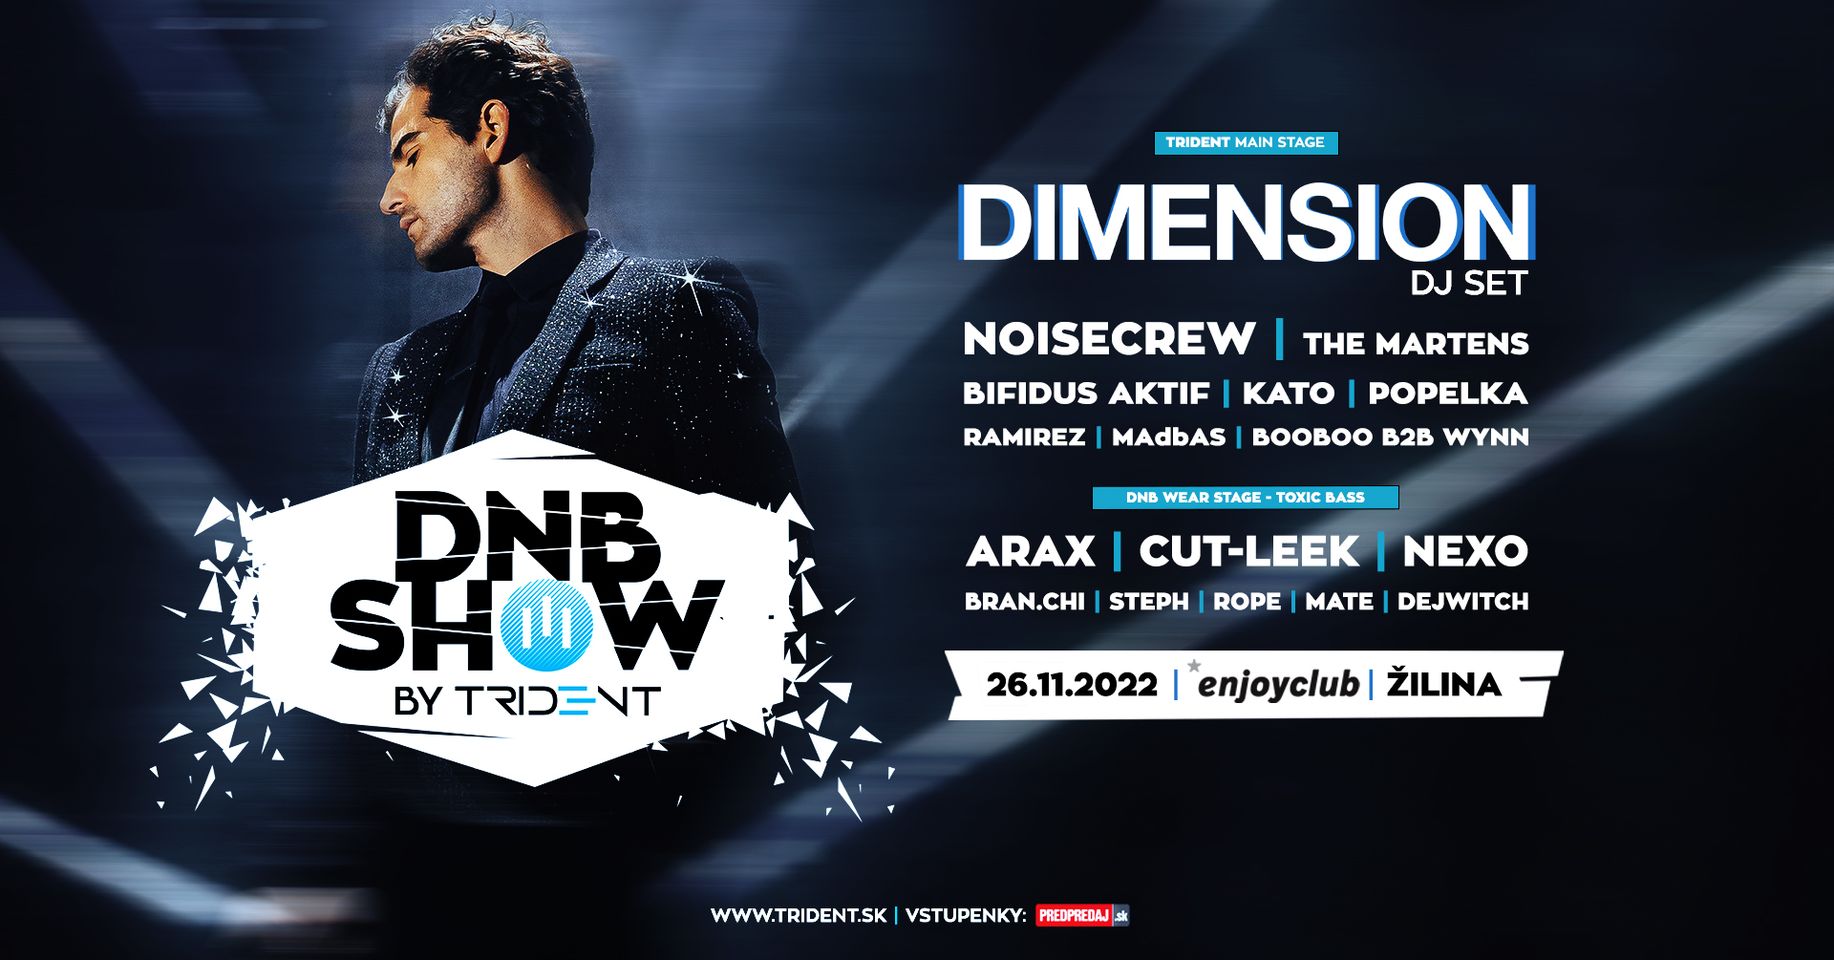 DnB show by III Trident w. DIMENSION enjoyclub